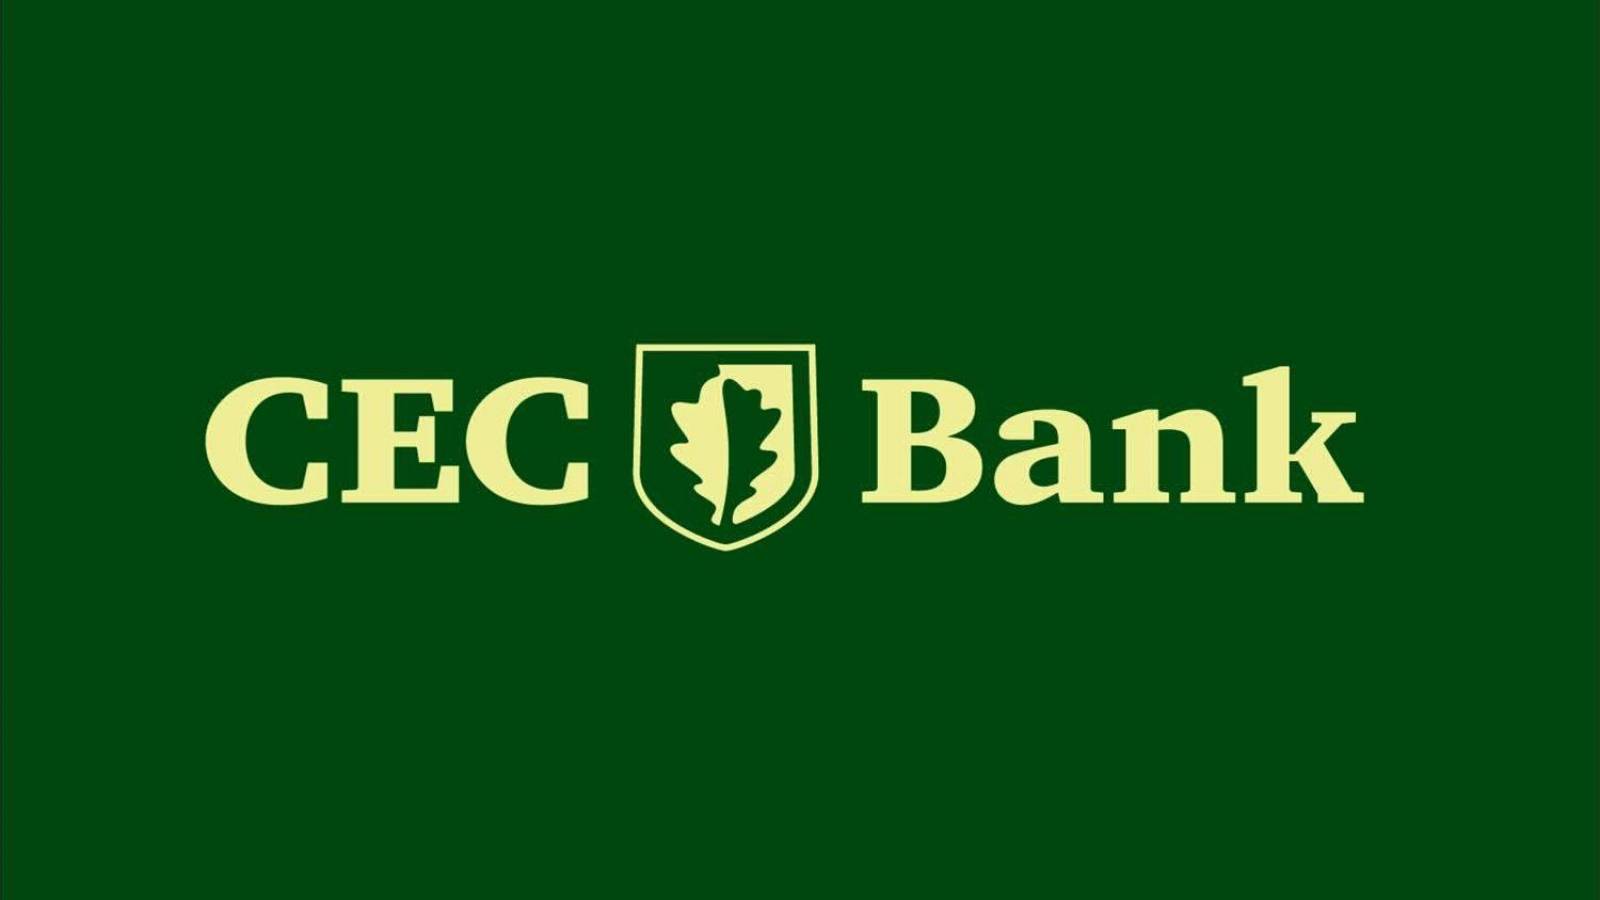 Constructions de la Banque CEC